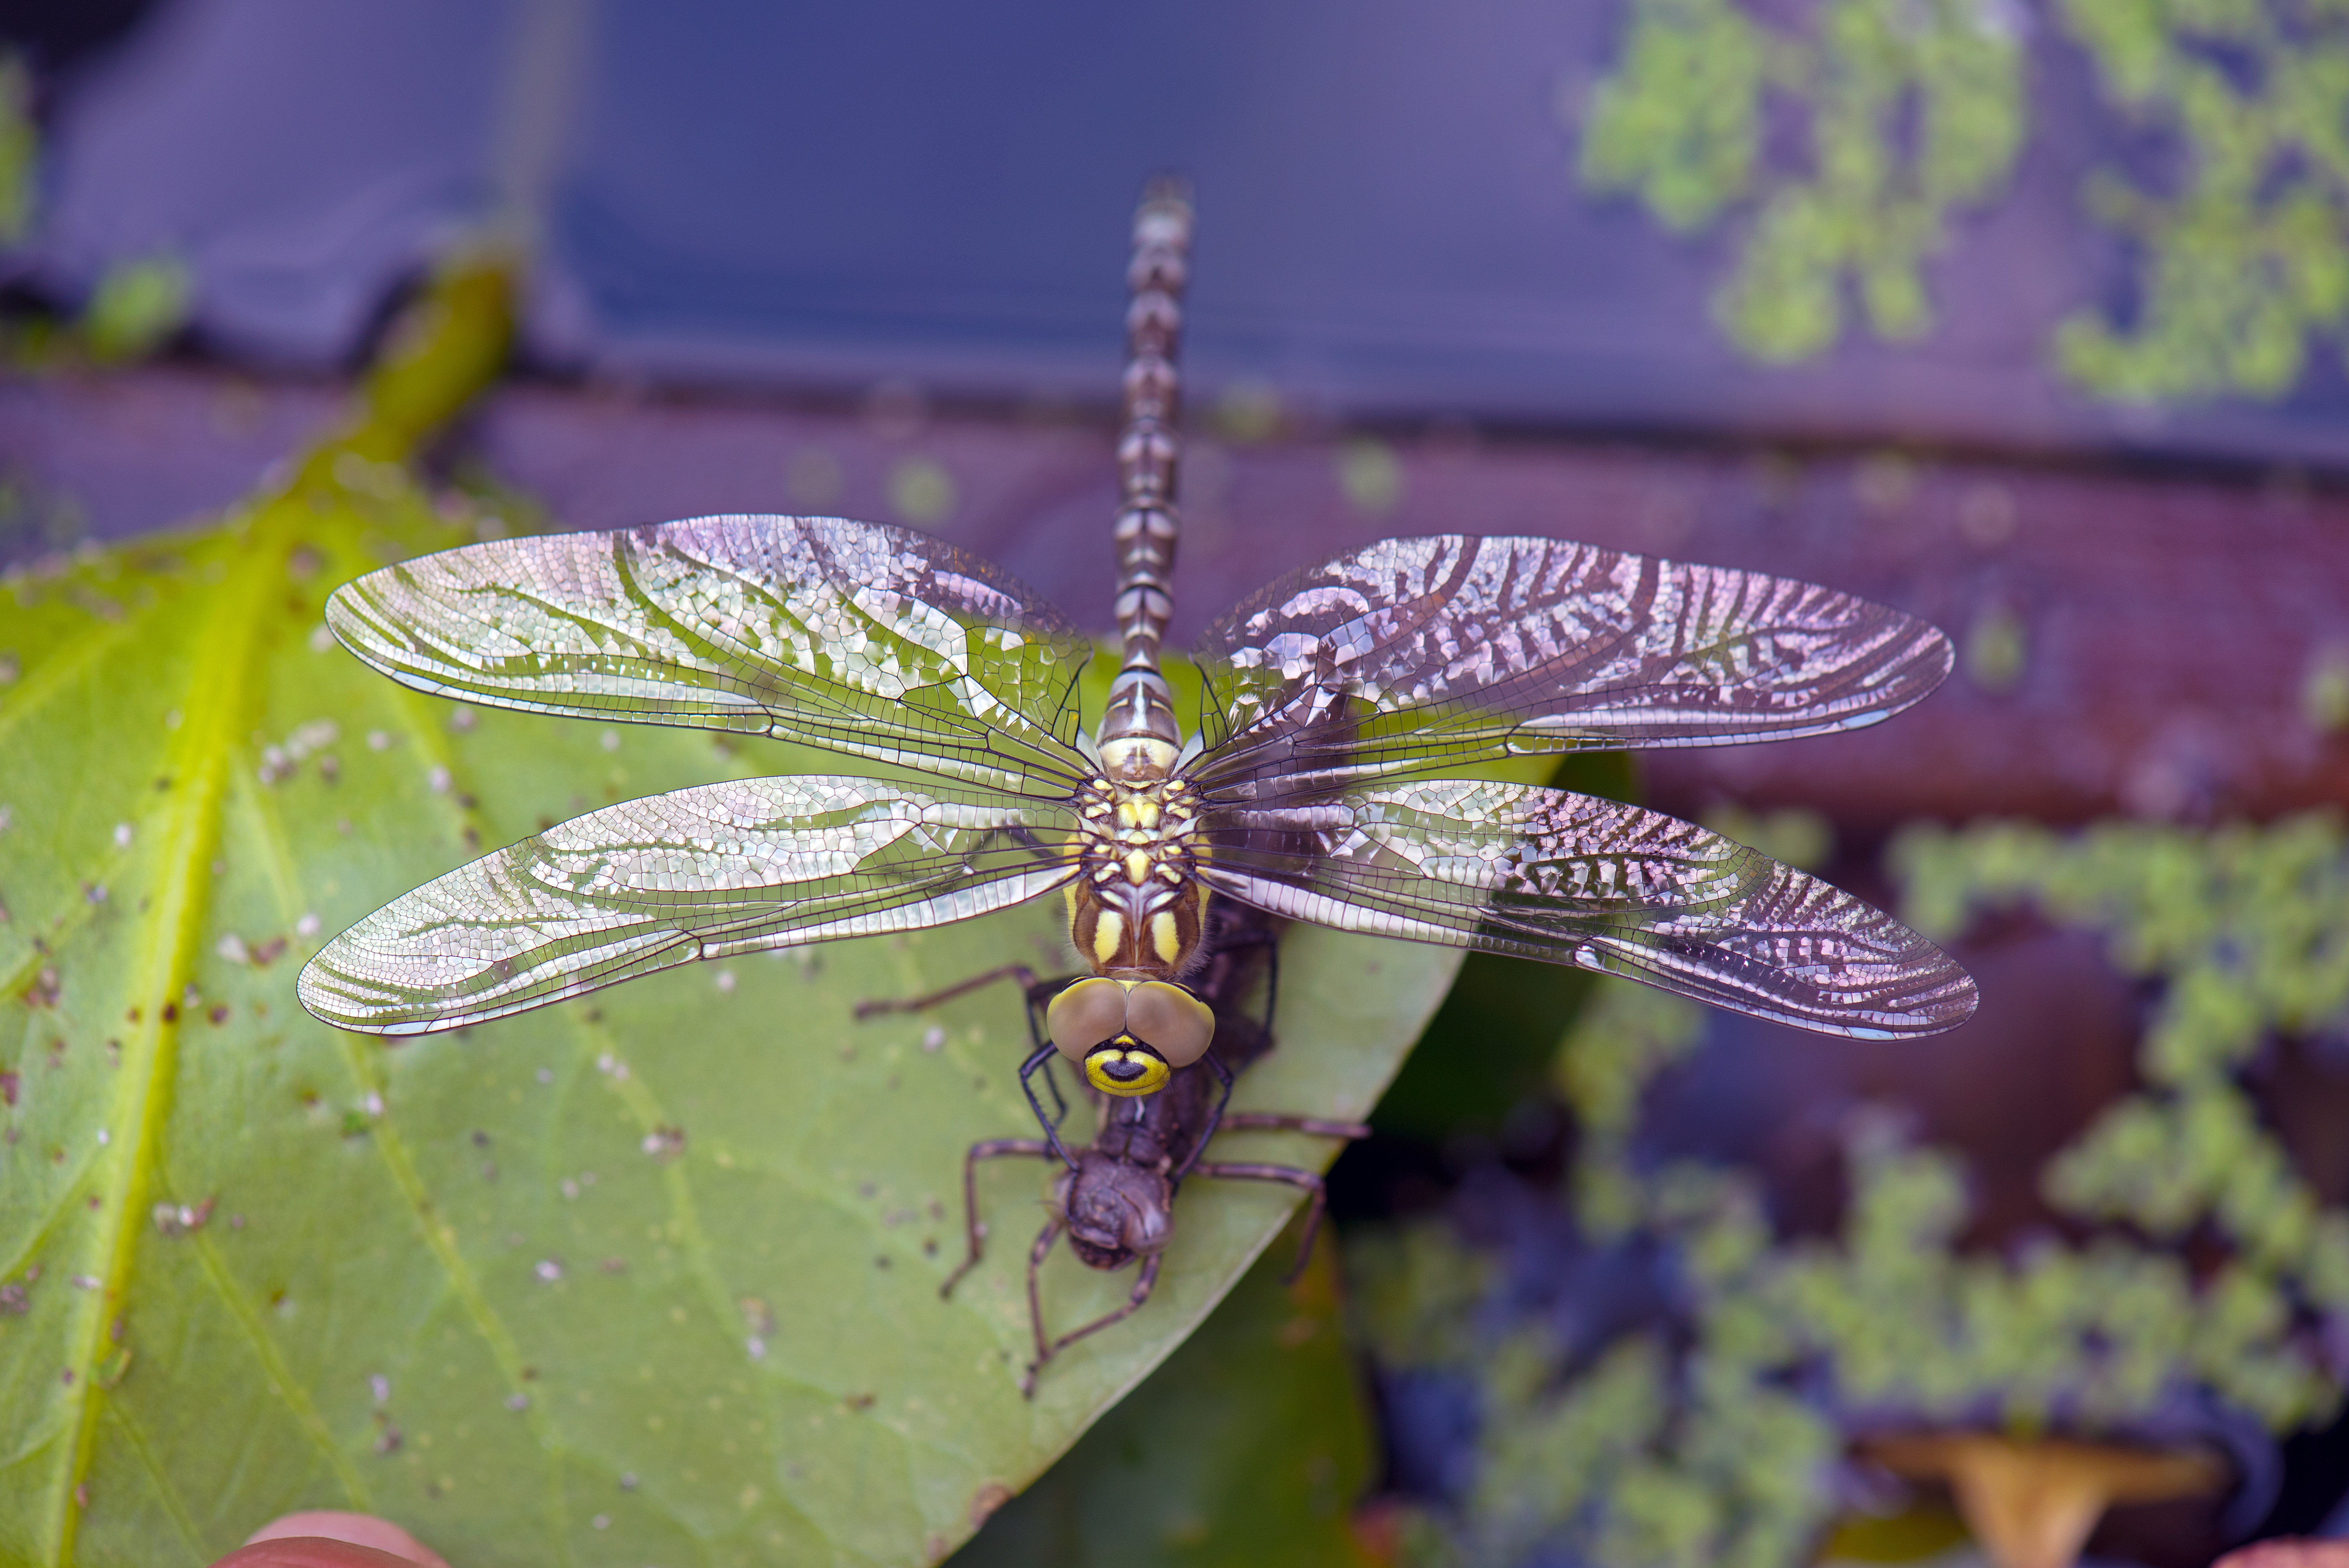 Фото насекомые макросъемка стрекозы крупным планом - бесплатные картинки на Fonwall